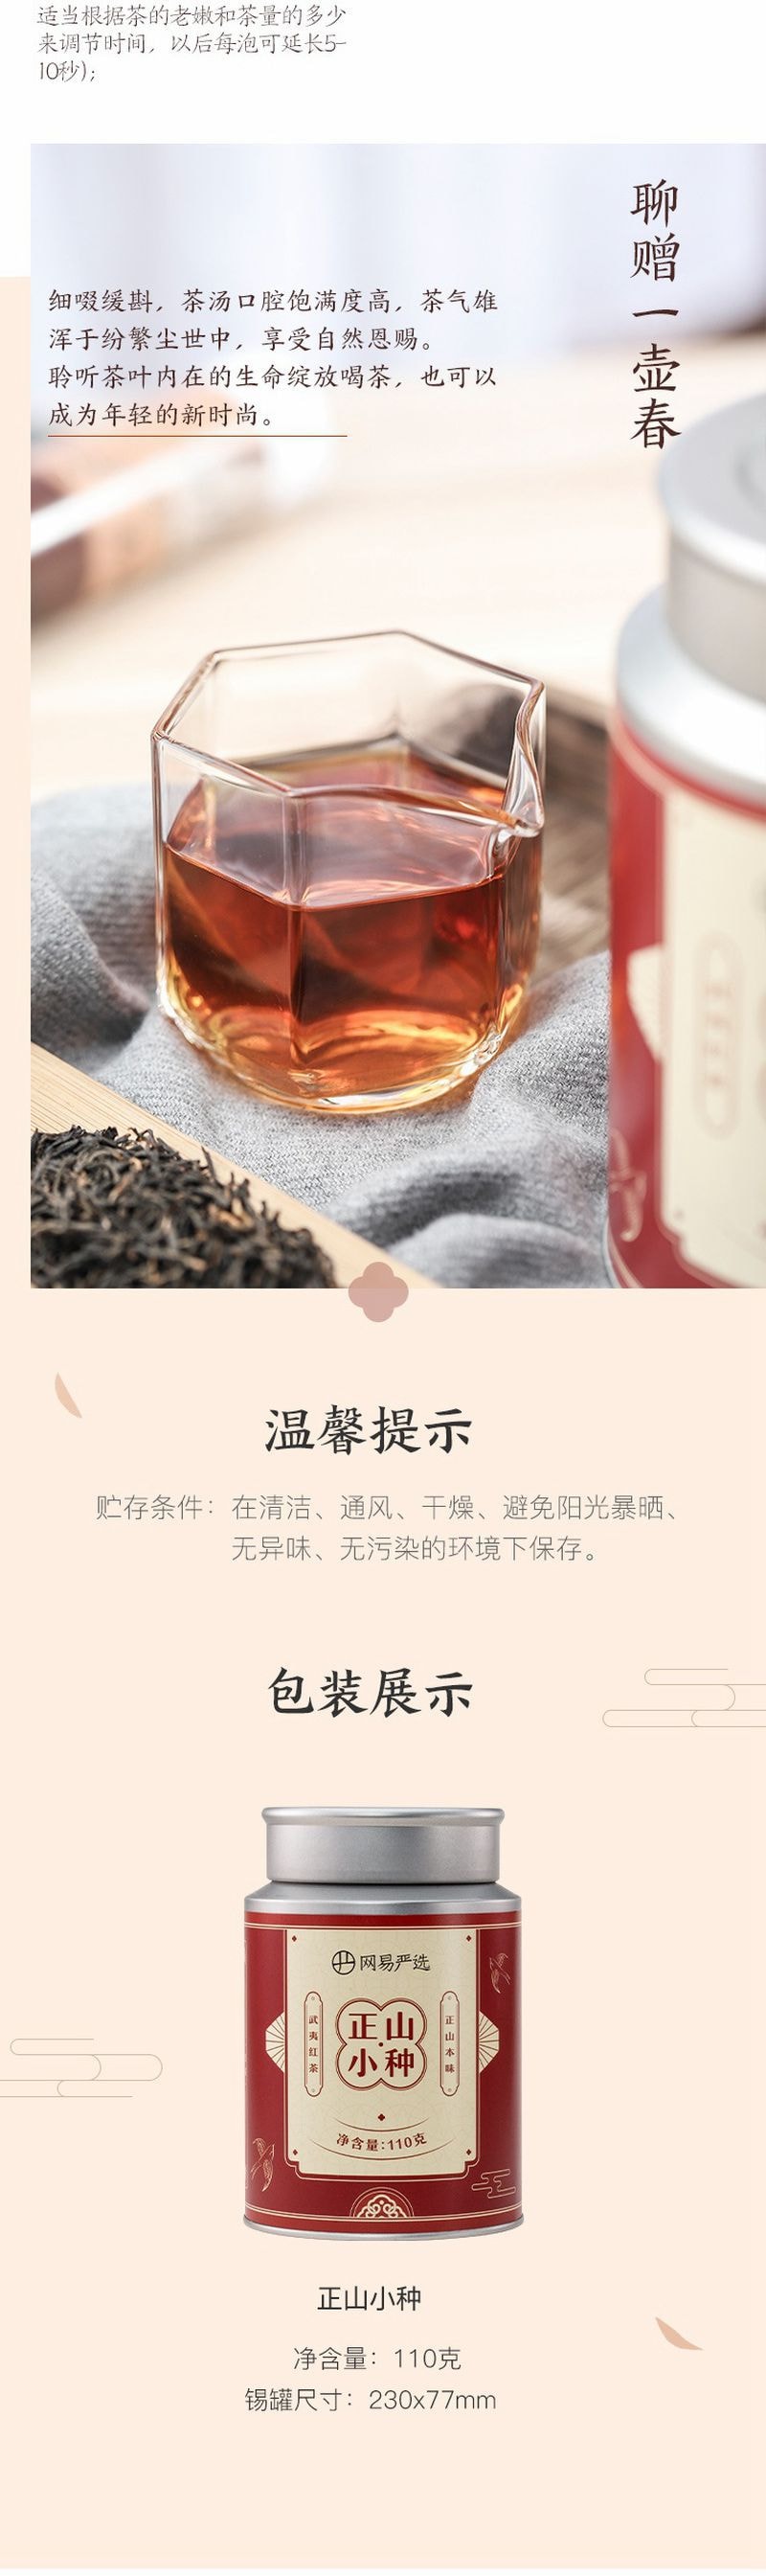 YANXUAN Lapsang Sauchong Tea 100g